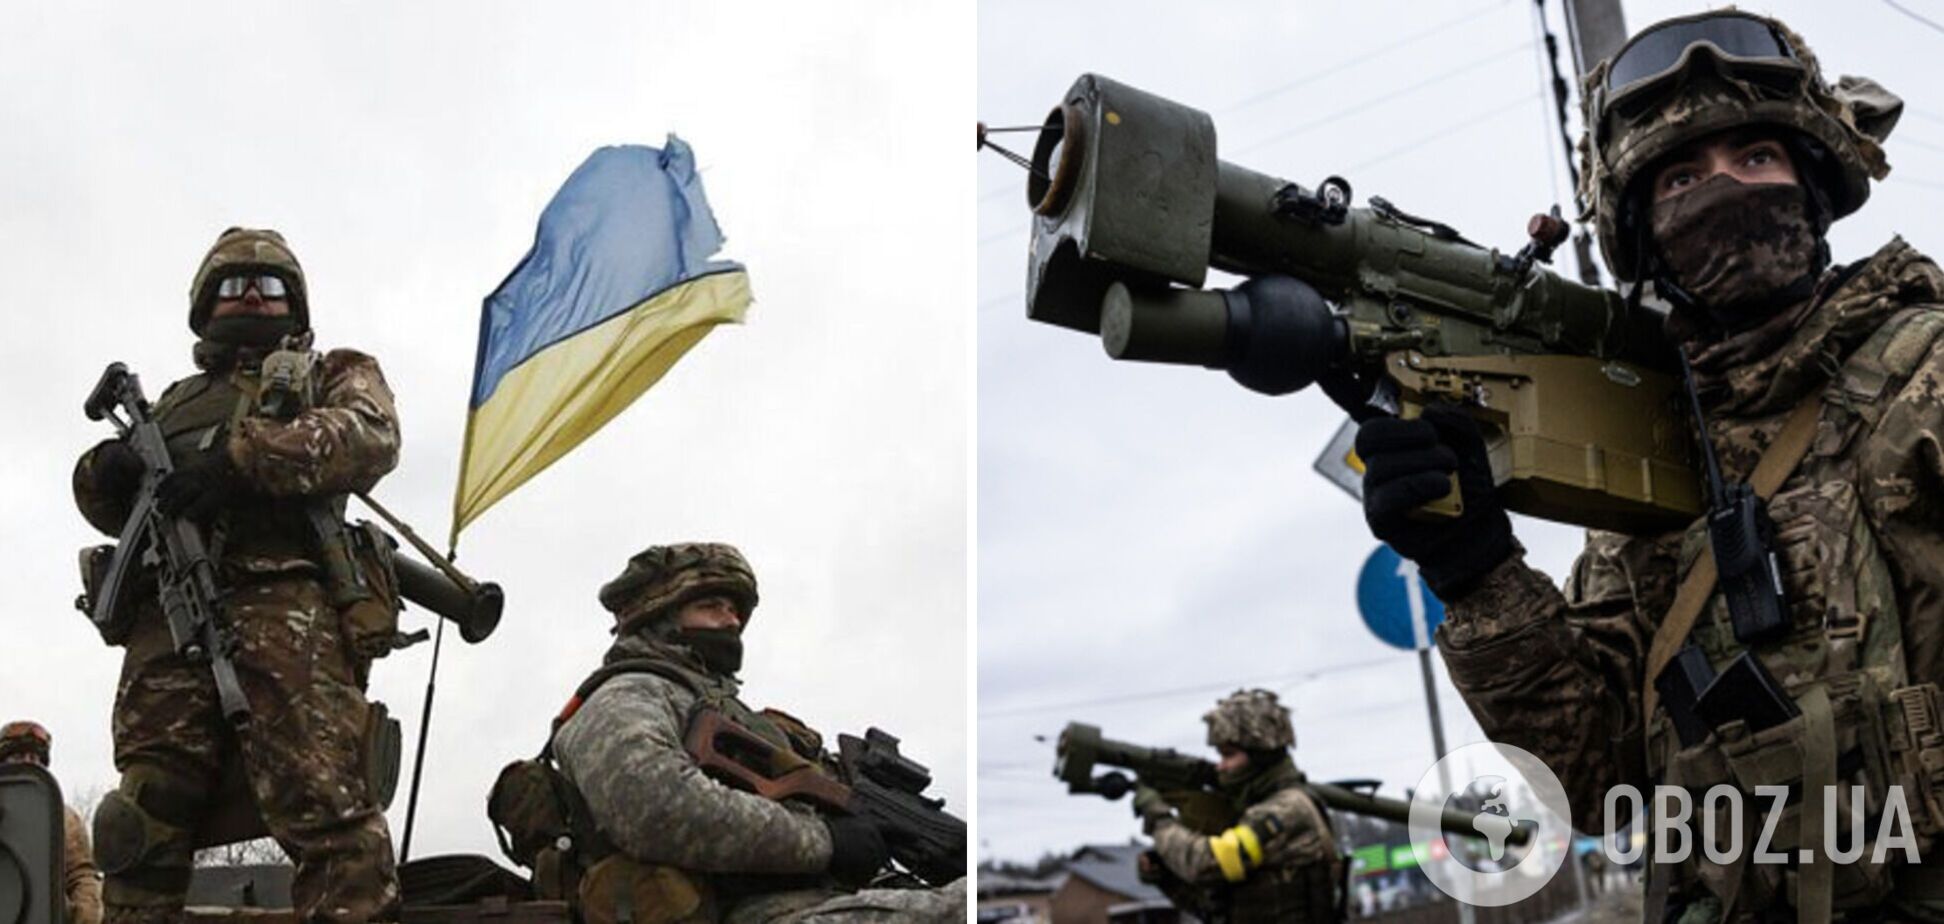 'Інтенсивність знизиться': військовий експерт дав прогноз, як може вплинути погода взимку на перебіг війни в Україні